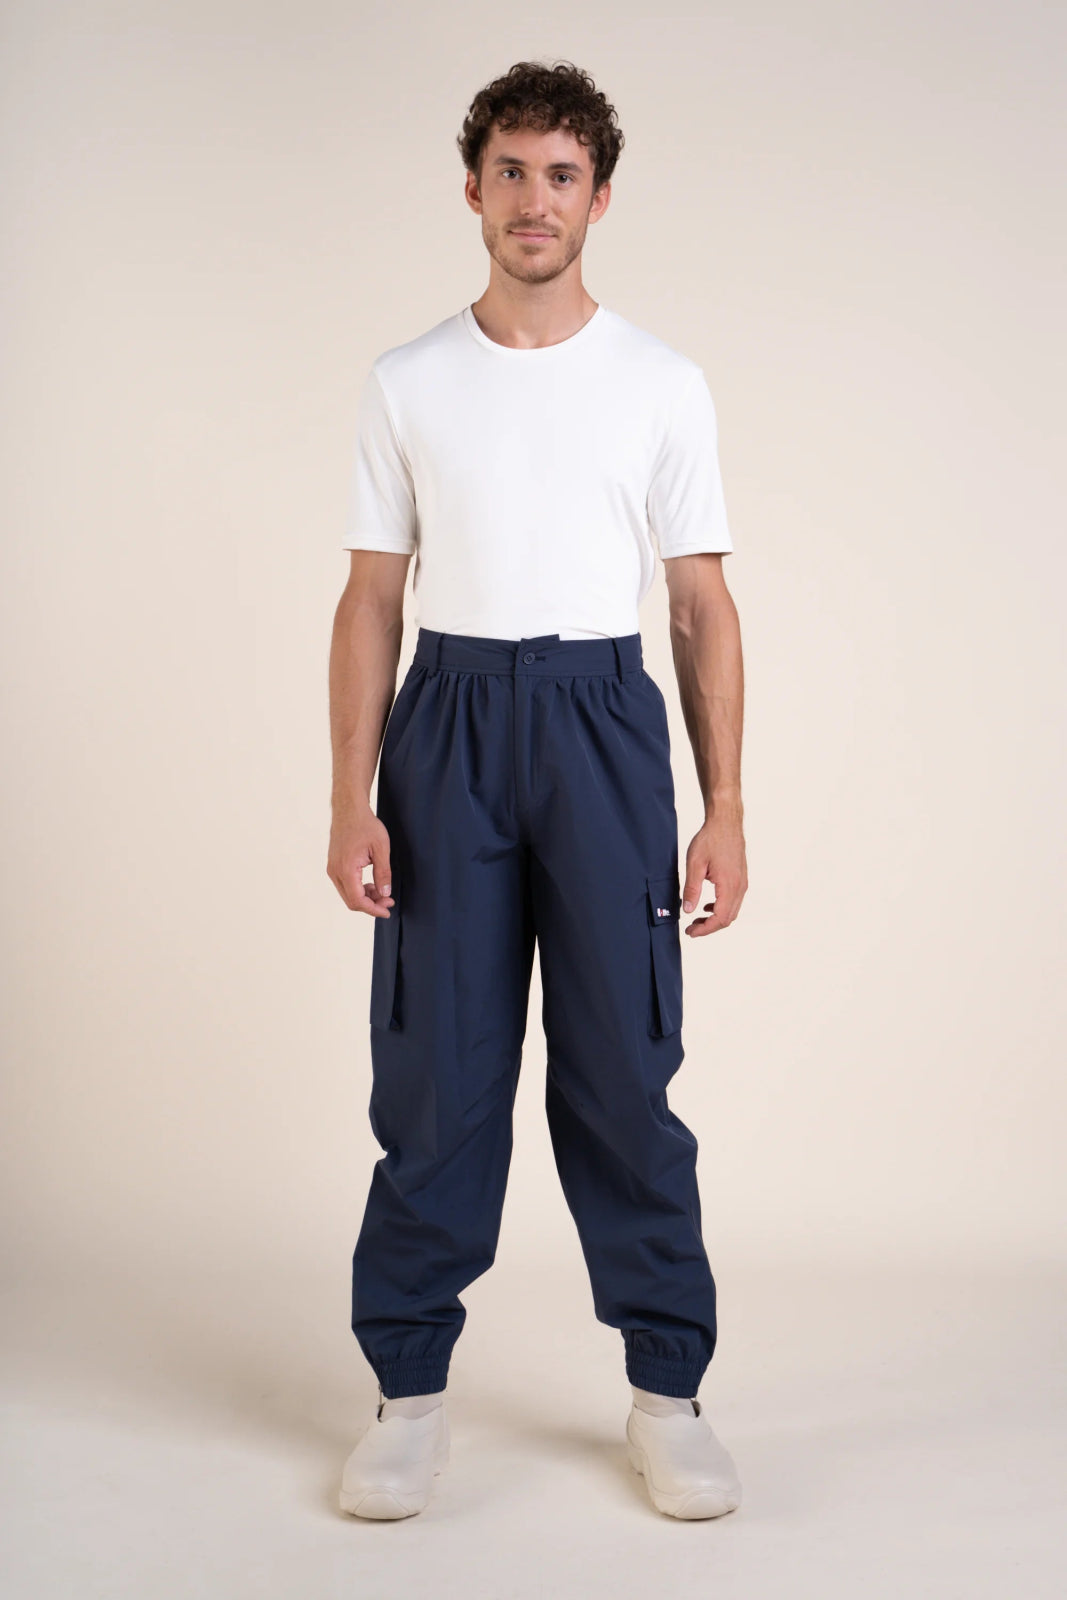 Pantalon imperméable Gambetta cargo multipoches #couleur_indigo